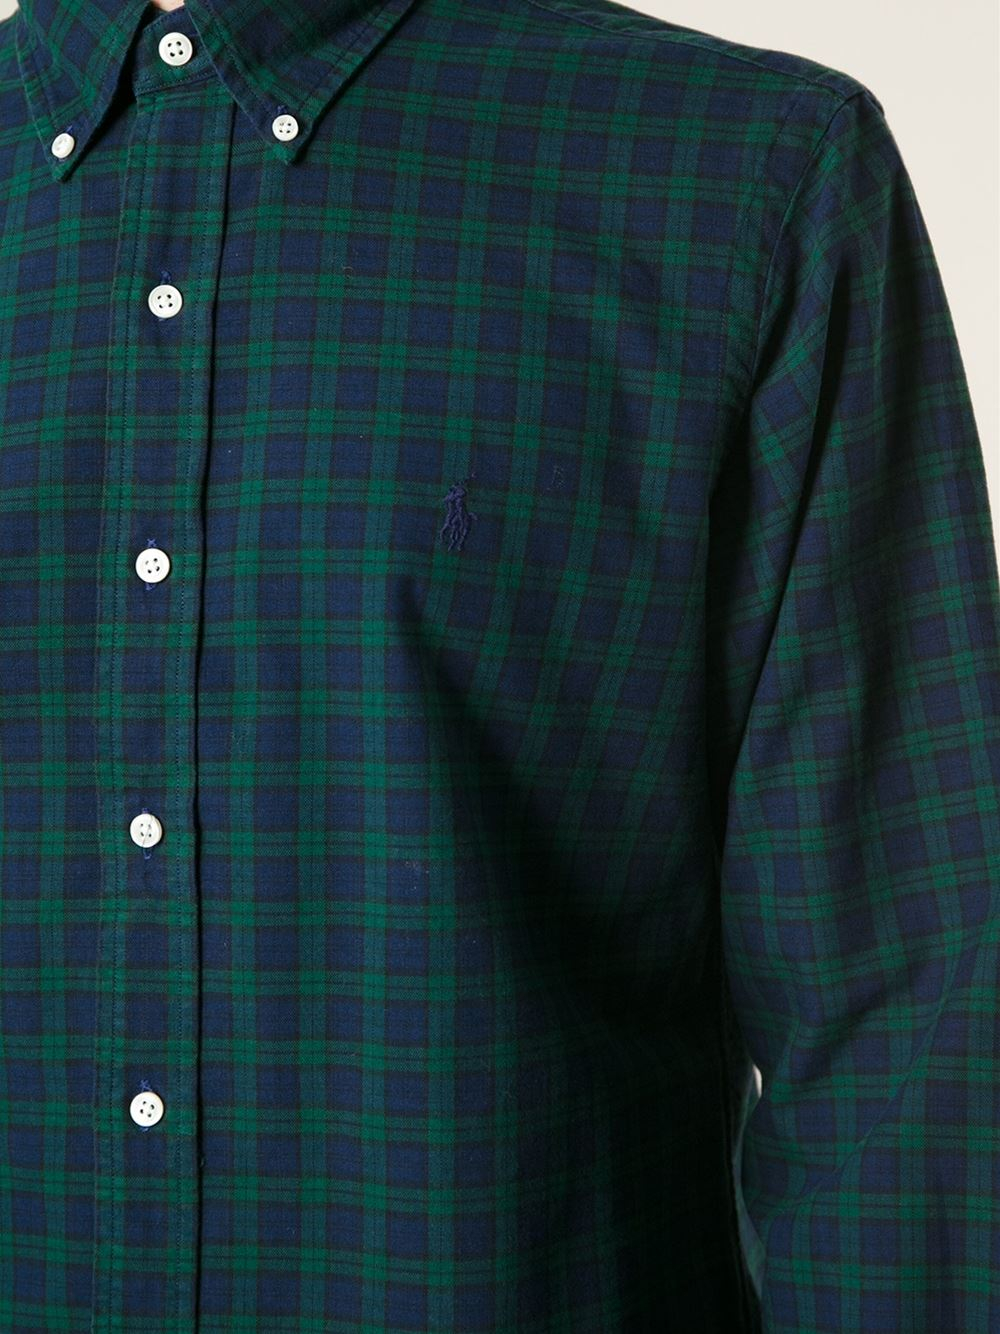 ralph lauren green check shirt